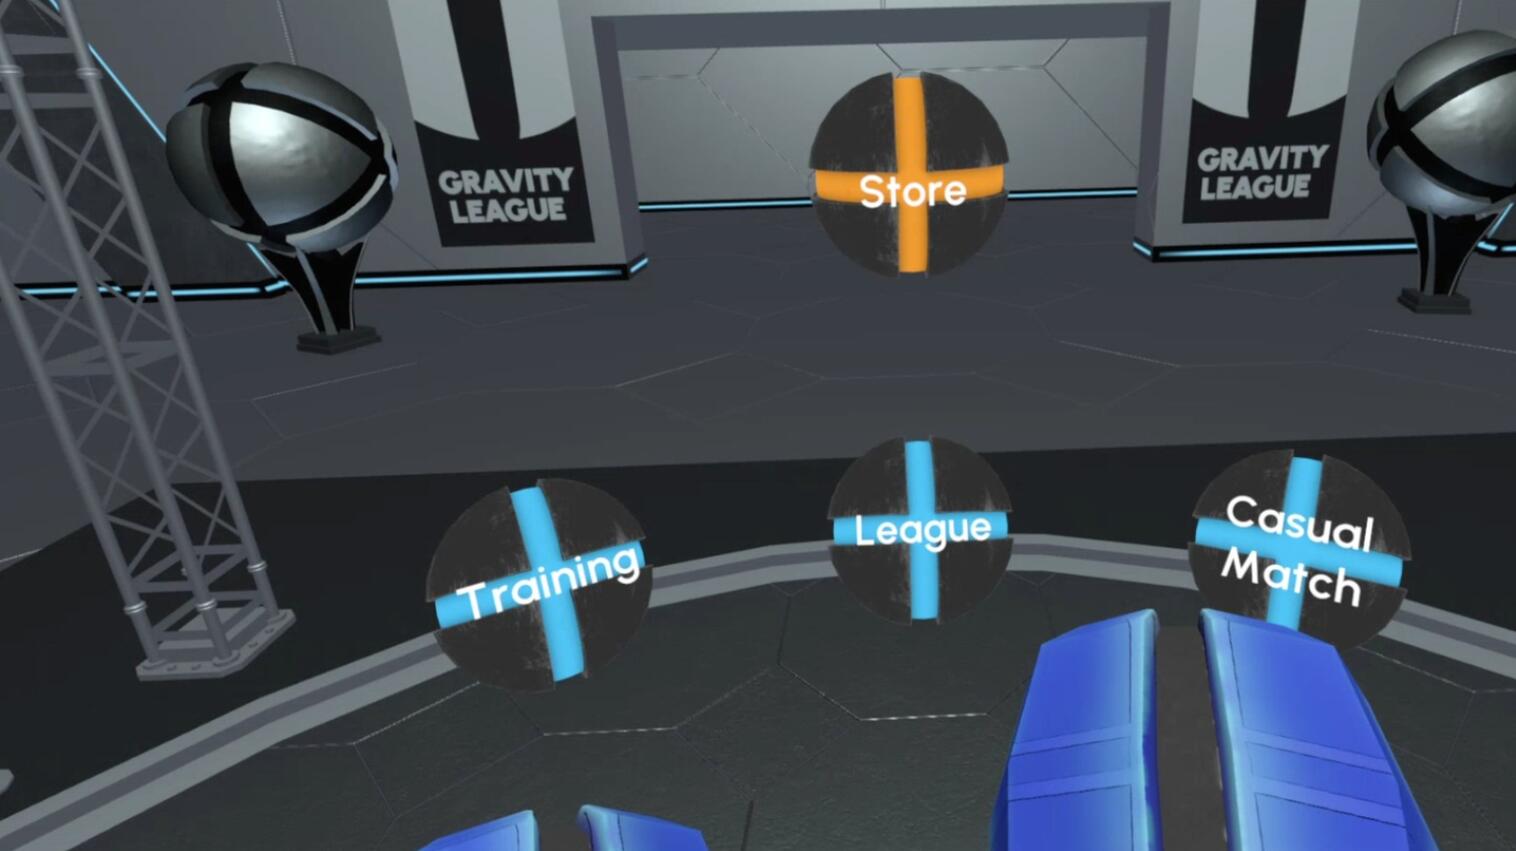 Oculus Quest 游戏《重力联赛》Gravity League